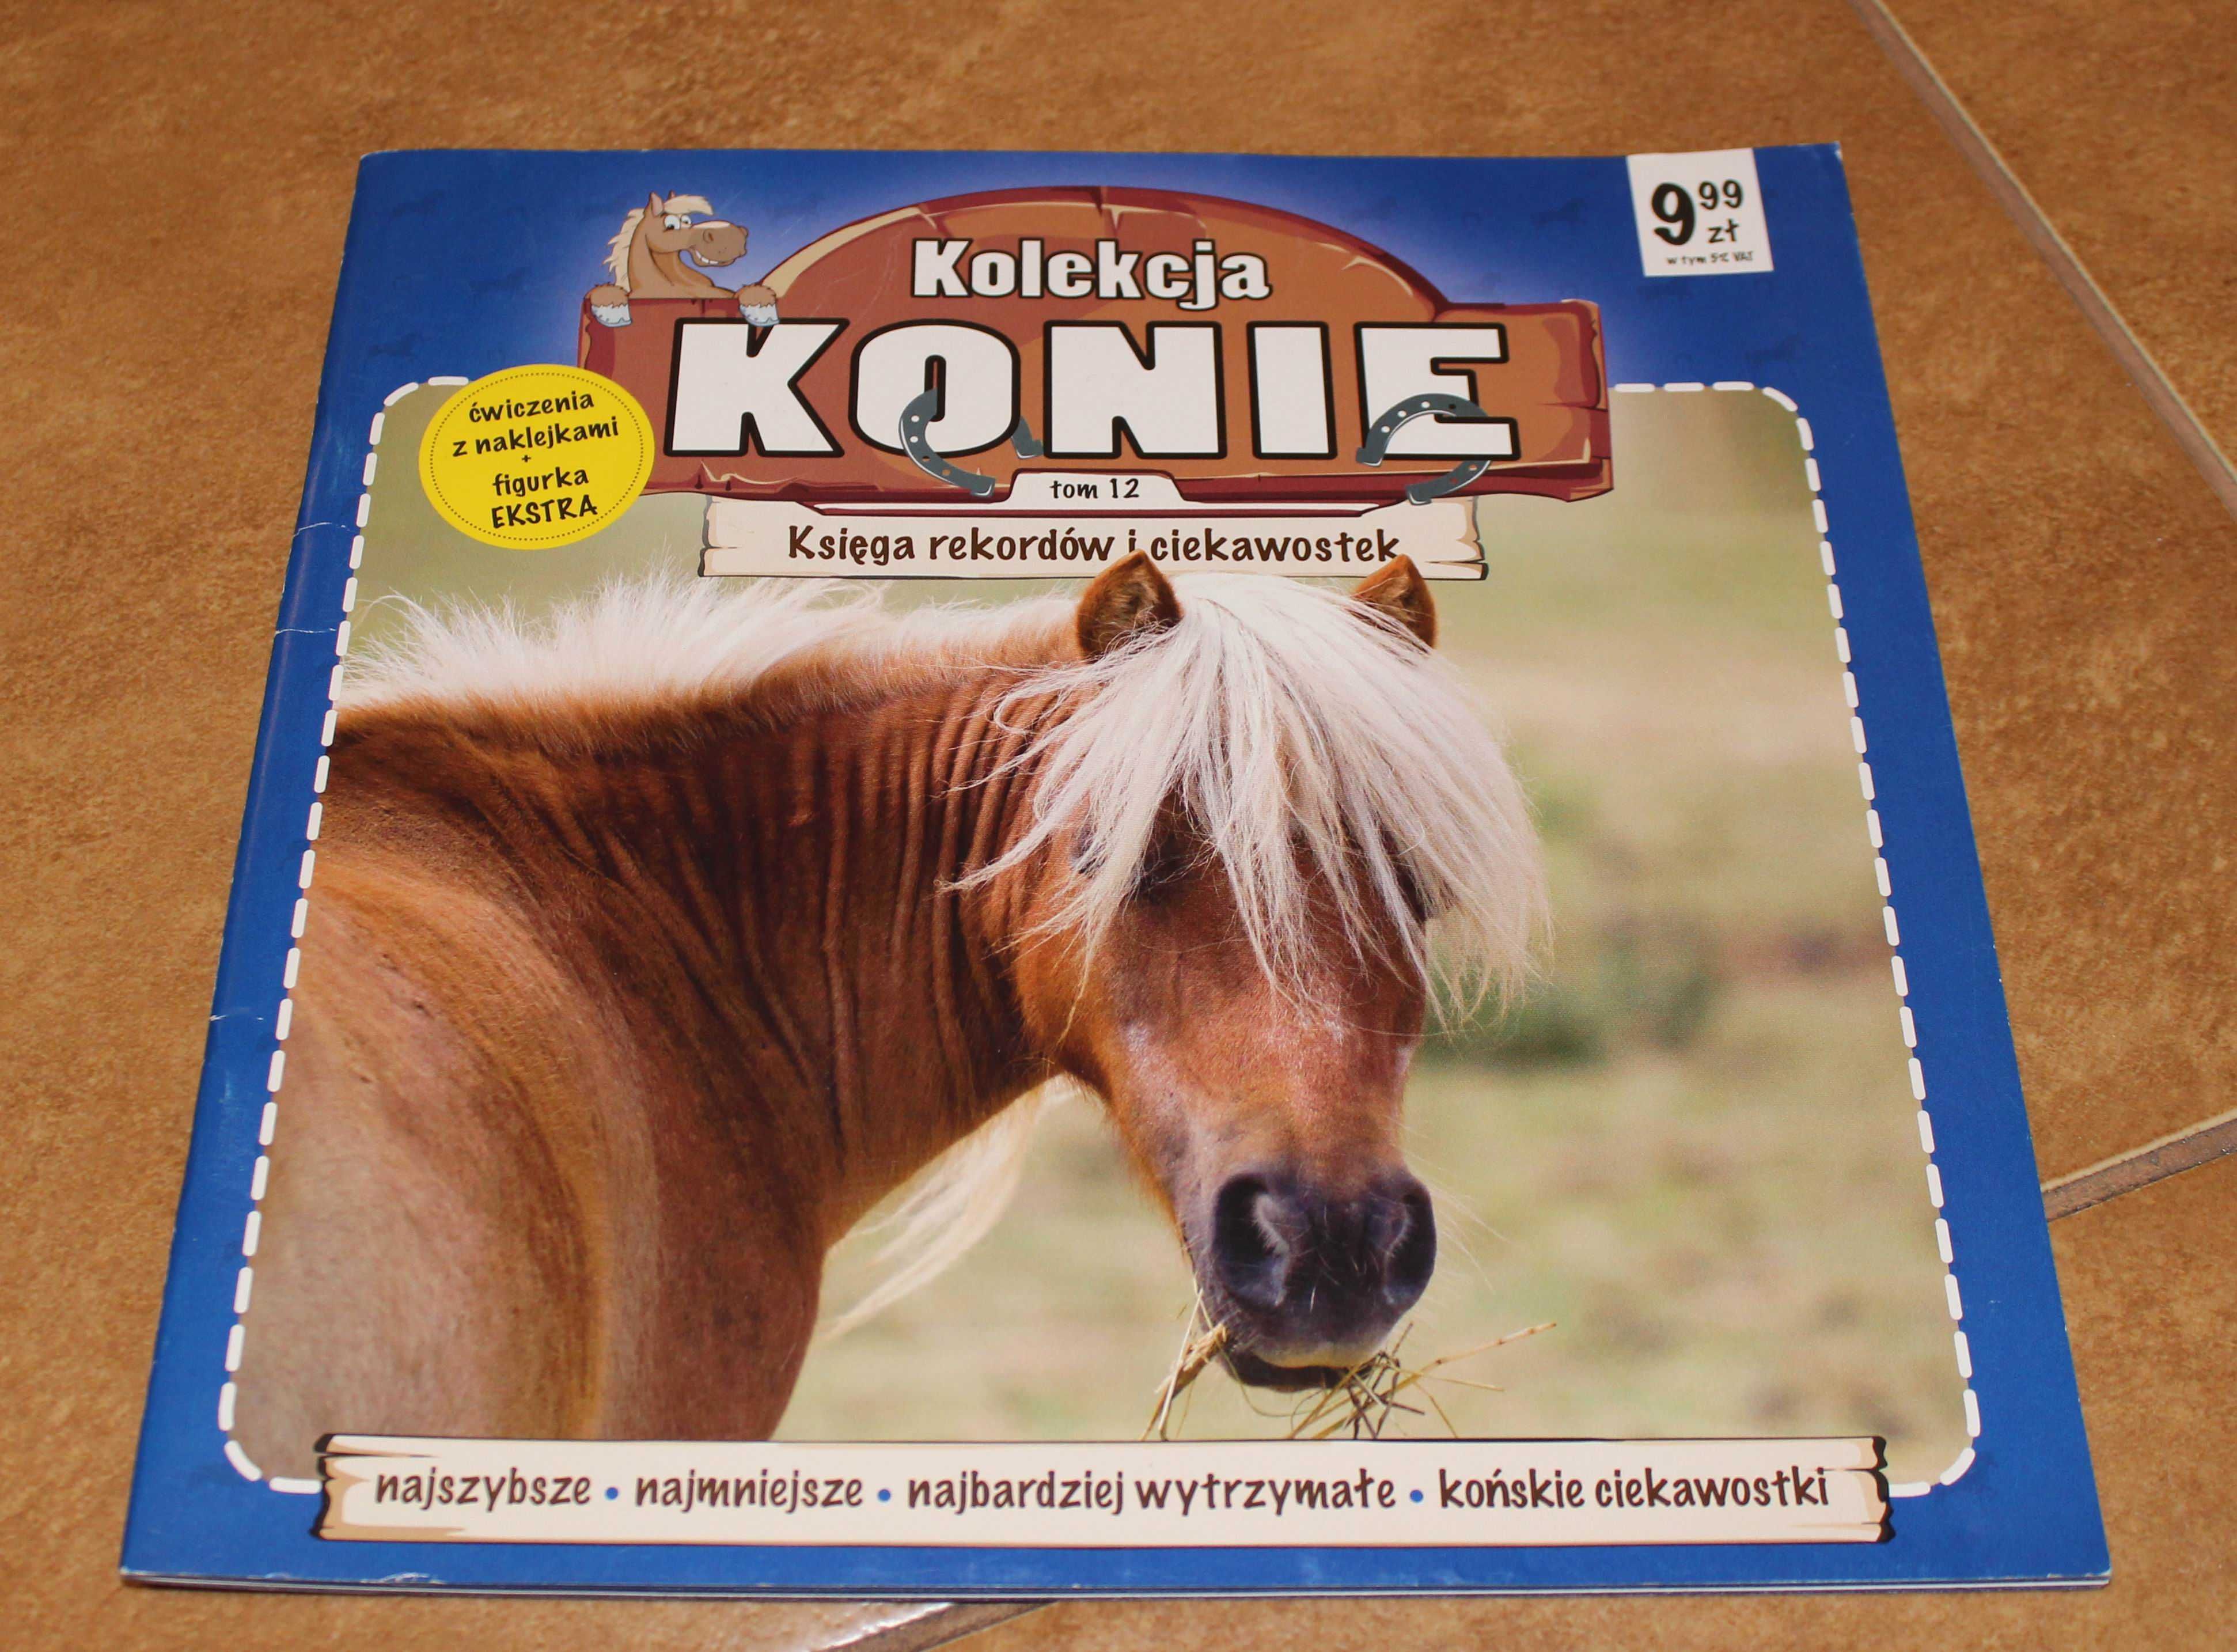 gazetka  - kolekcja Konie - tom 12 - księga rekordów i ciekawostek